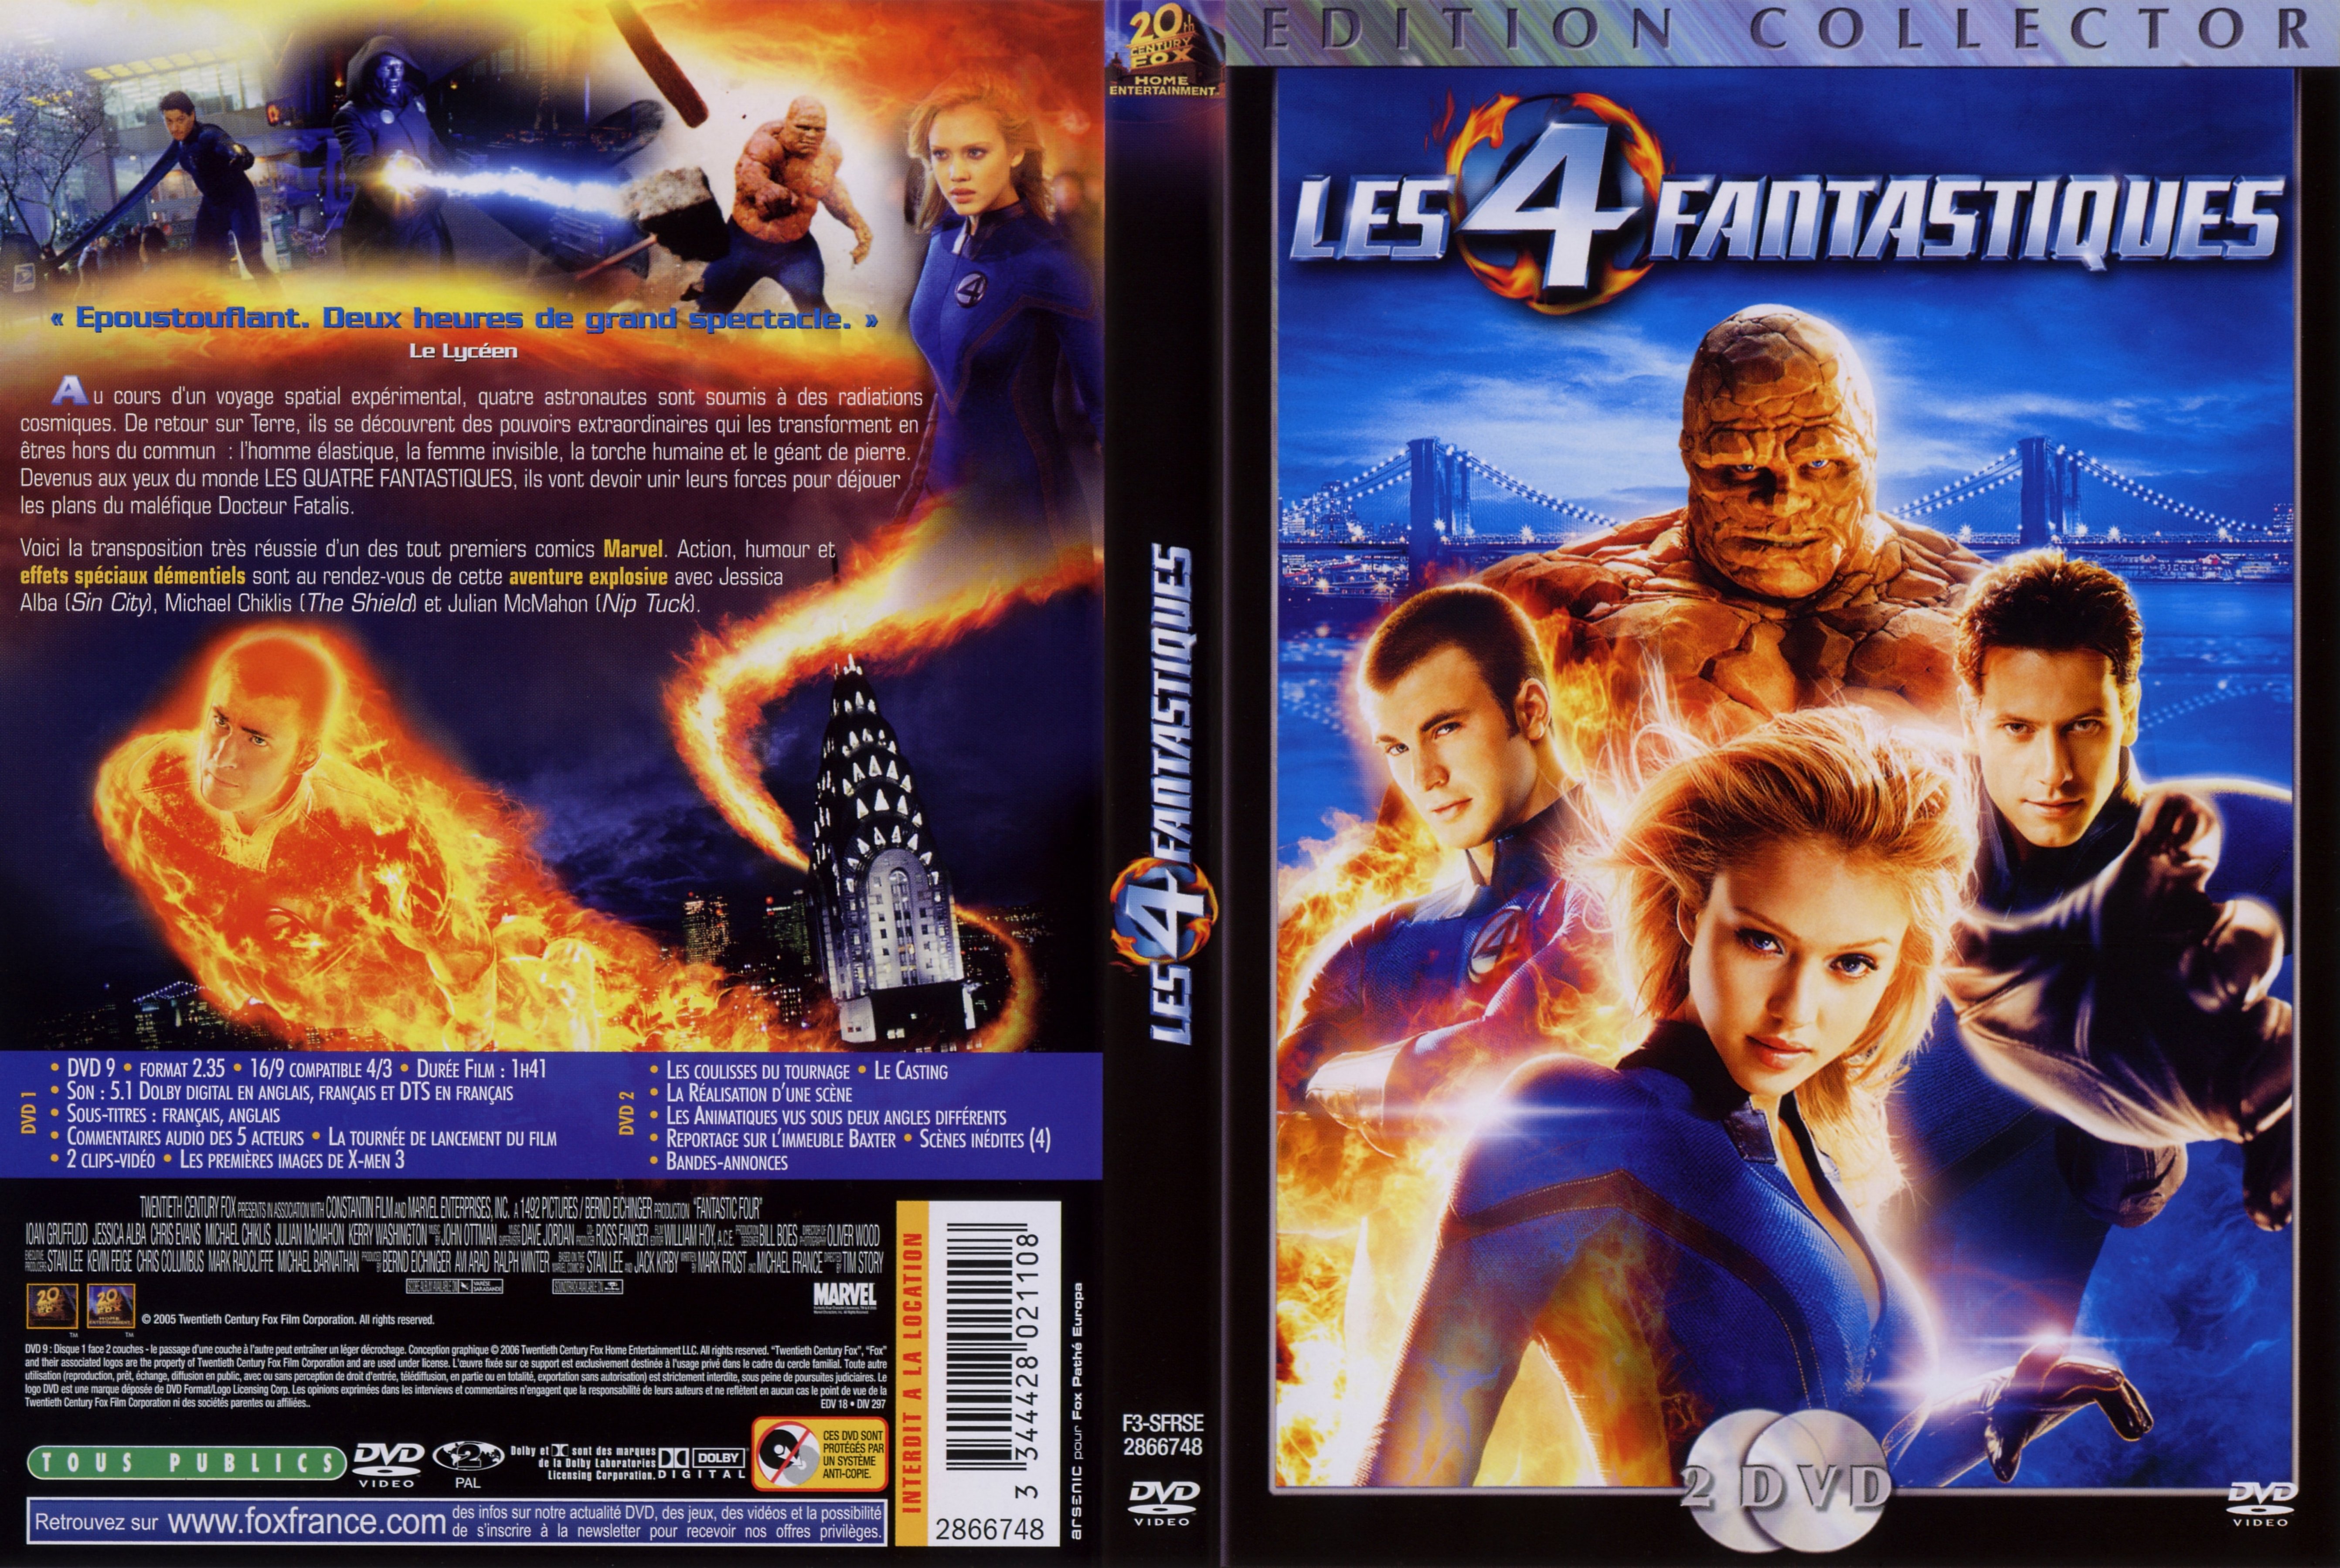 Jaquette DVD de Les 4 fantastiques v2  Cinéma Passion